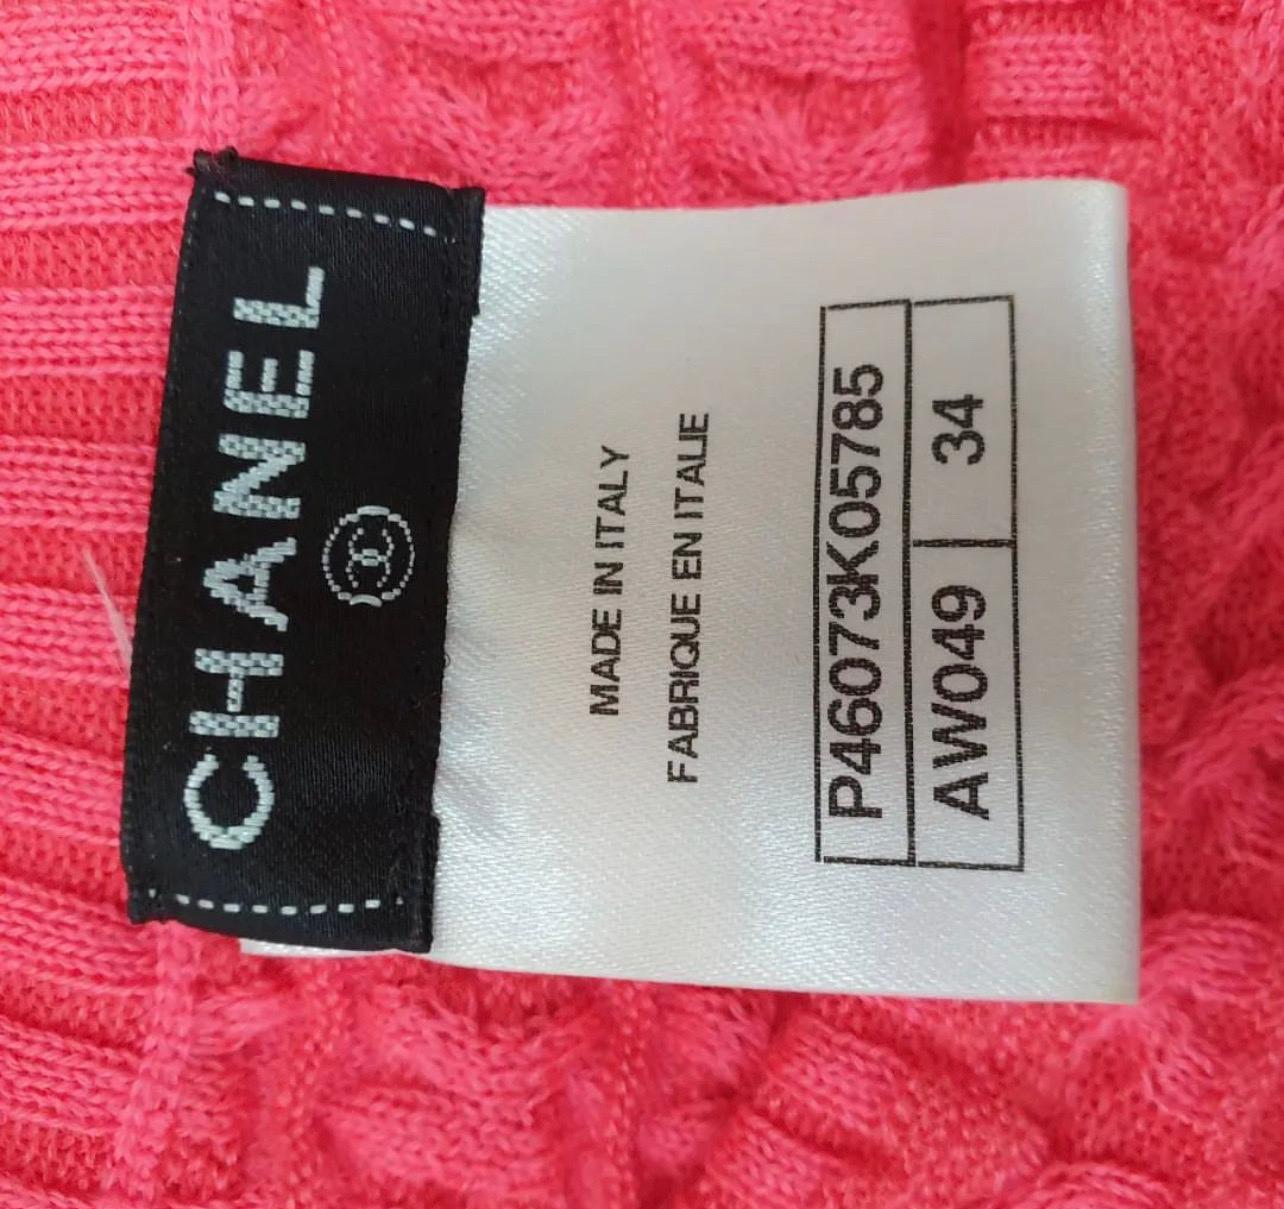 Cette élégante robe Chanel illuminera votre journée. Cette robe rehaussera votre tenue de tous les jours grâce à sa couleur rose foncé.

63% cachemire, 33% coton 4% polyester.



Très bon état. 

Sz.34